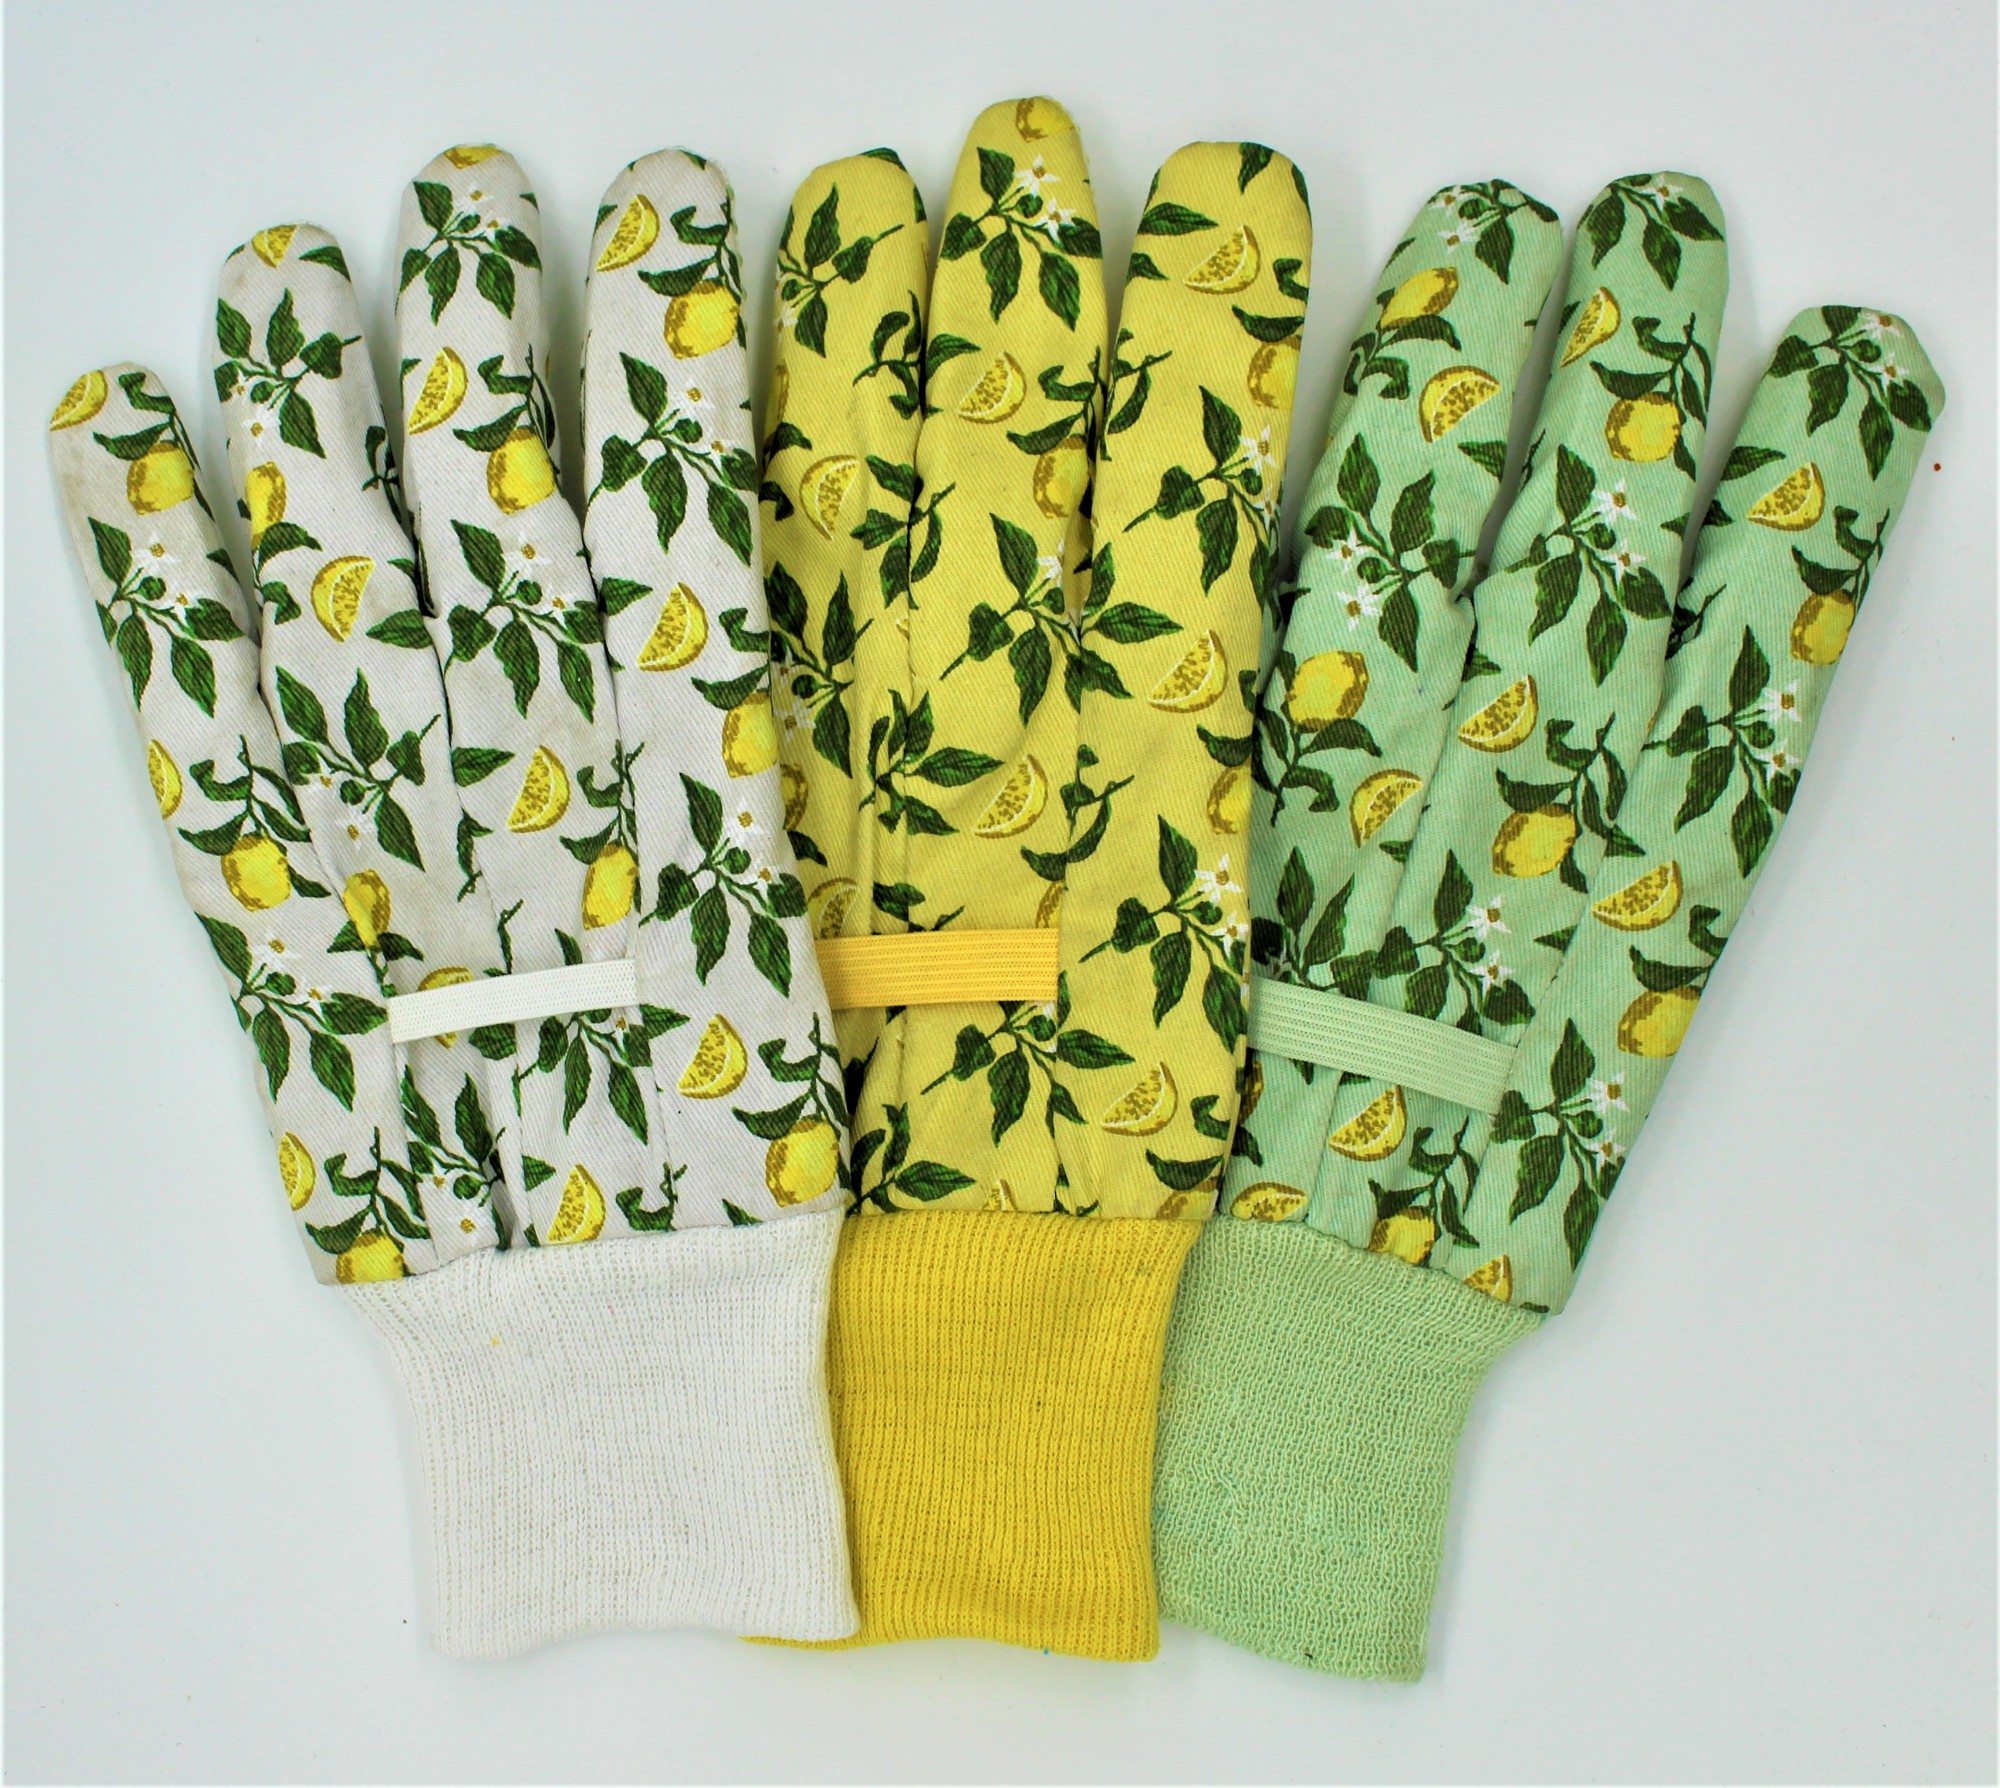 Koop Lemon Leaf Garden Gloves. Lemon Leaf Garden Gloves Prijzen. Lemon Leaf Garden Gloves Brands. Lemon Leaf Garden Gloves Fabrikant. Lemon Leaf Garden Gloves Quotes. Lemon Leaf Garden Gloves Company.